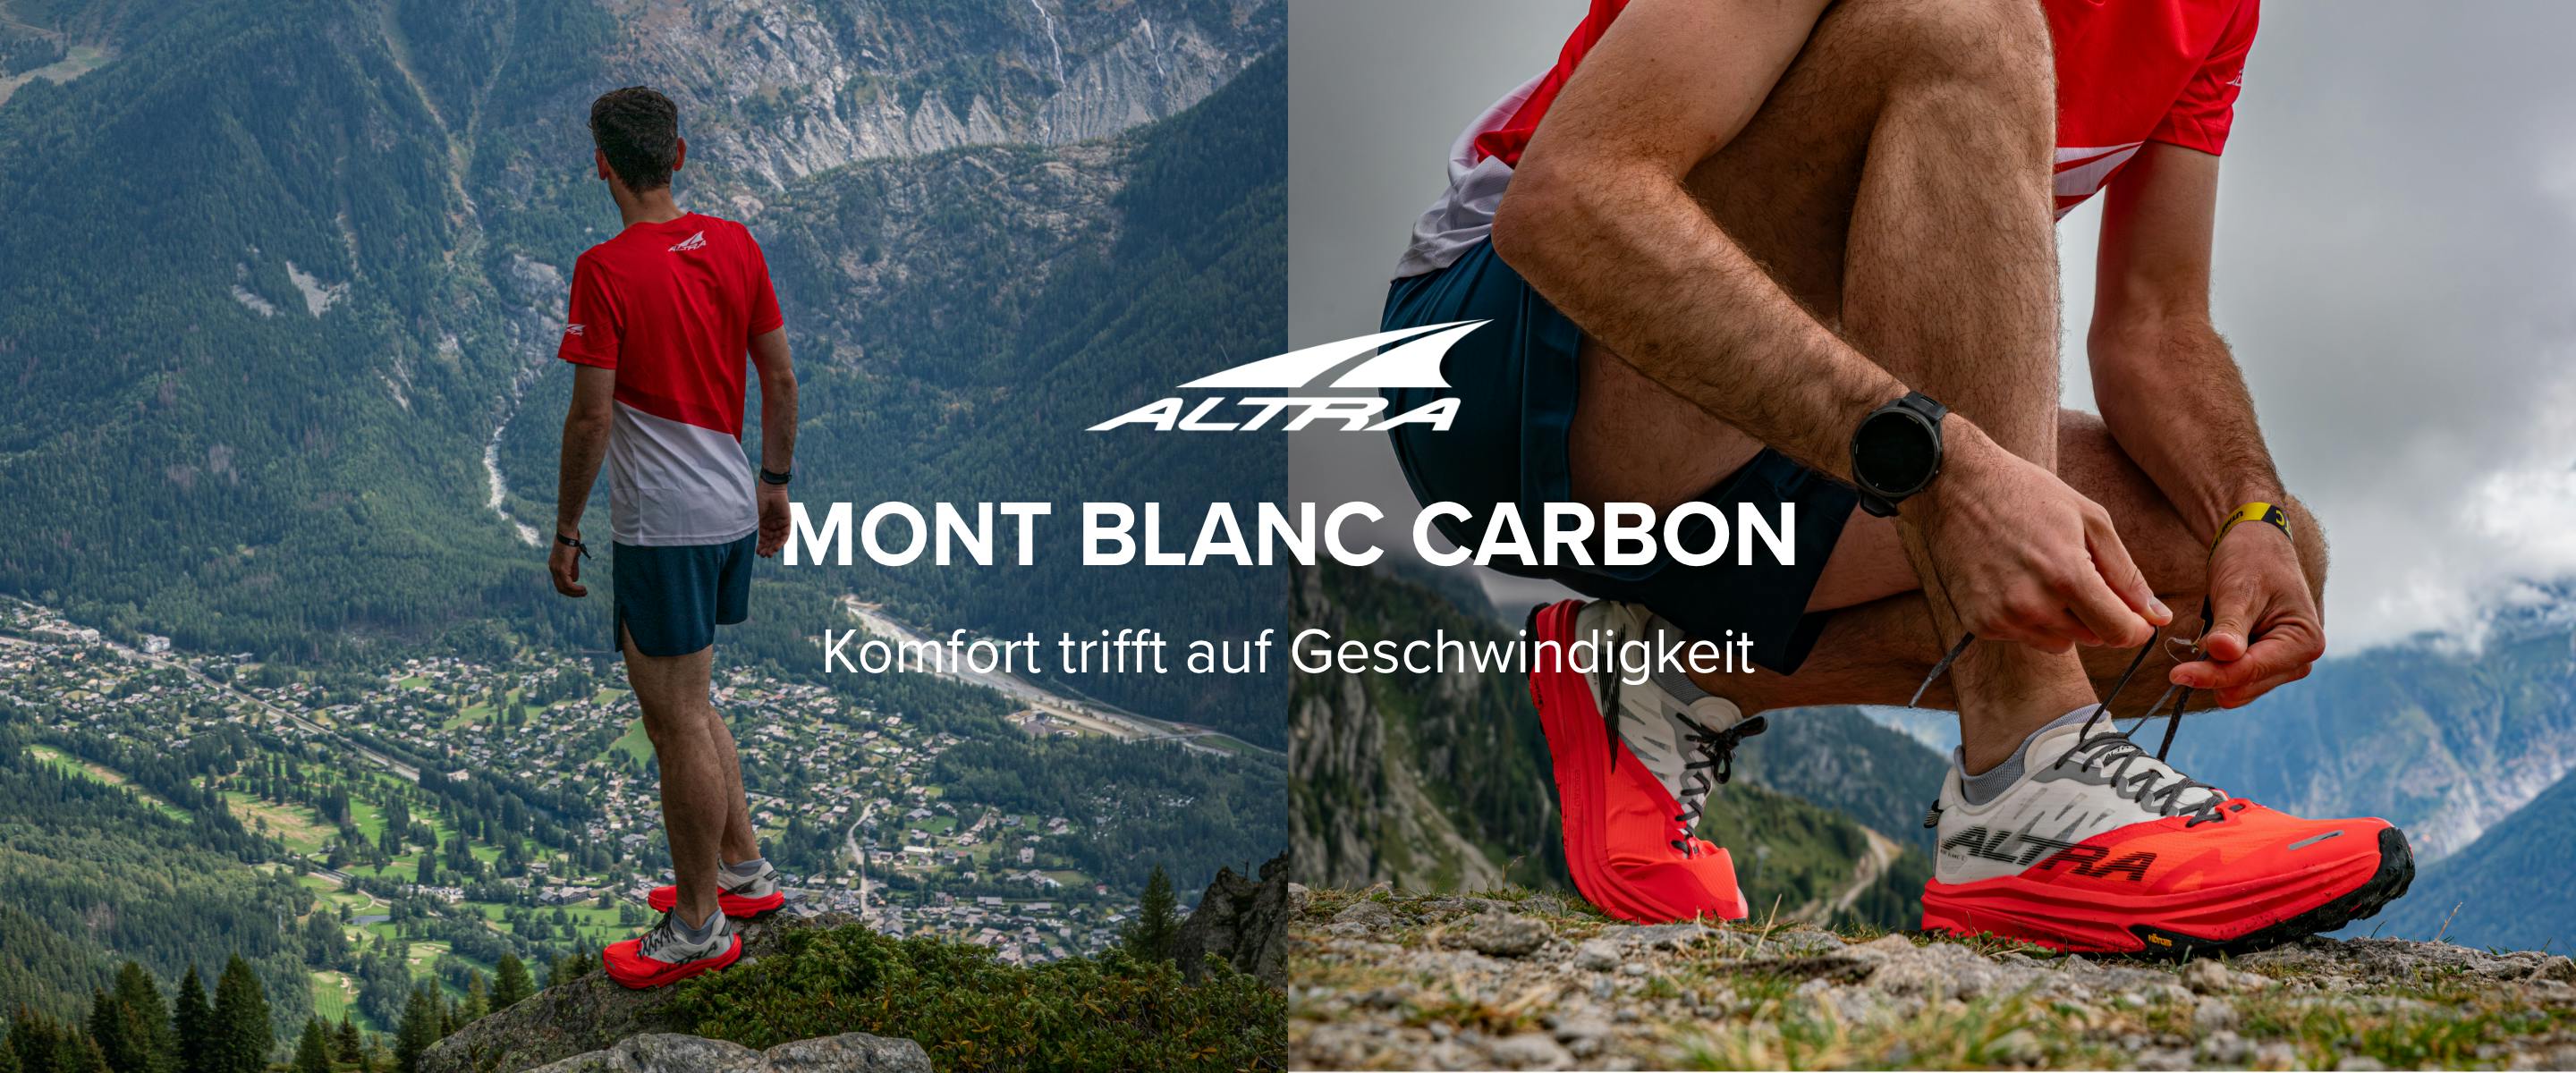 Altra Mont Blanc Carbon